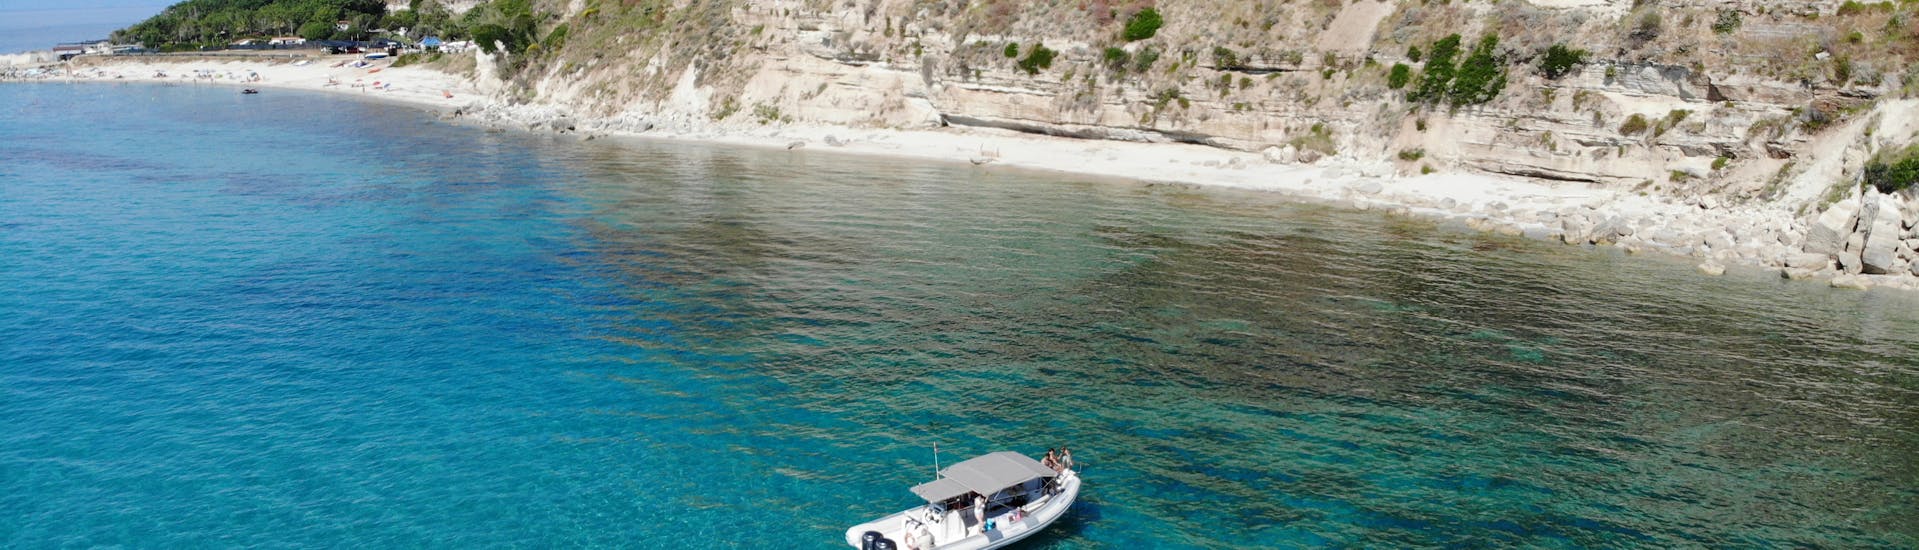 Boot von TropeaSub von oben gesehen während privater Bootsfahrt von Tropea nach Capo Vaticano mit Schnorcheln.